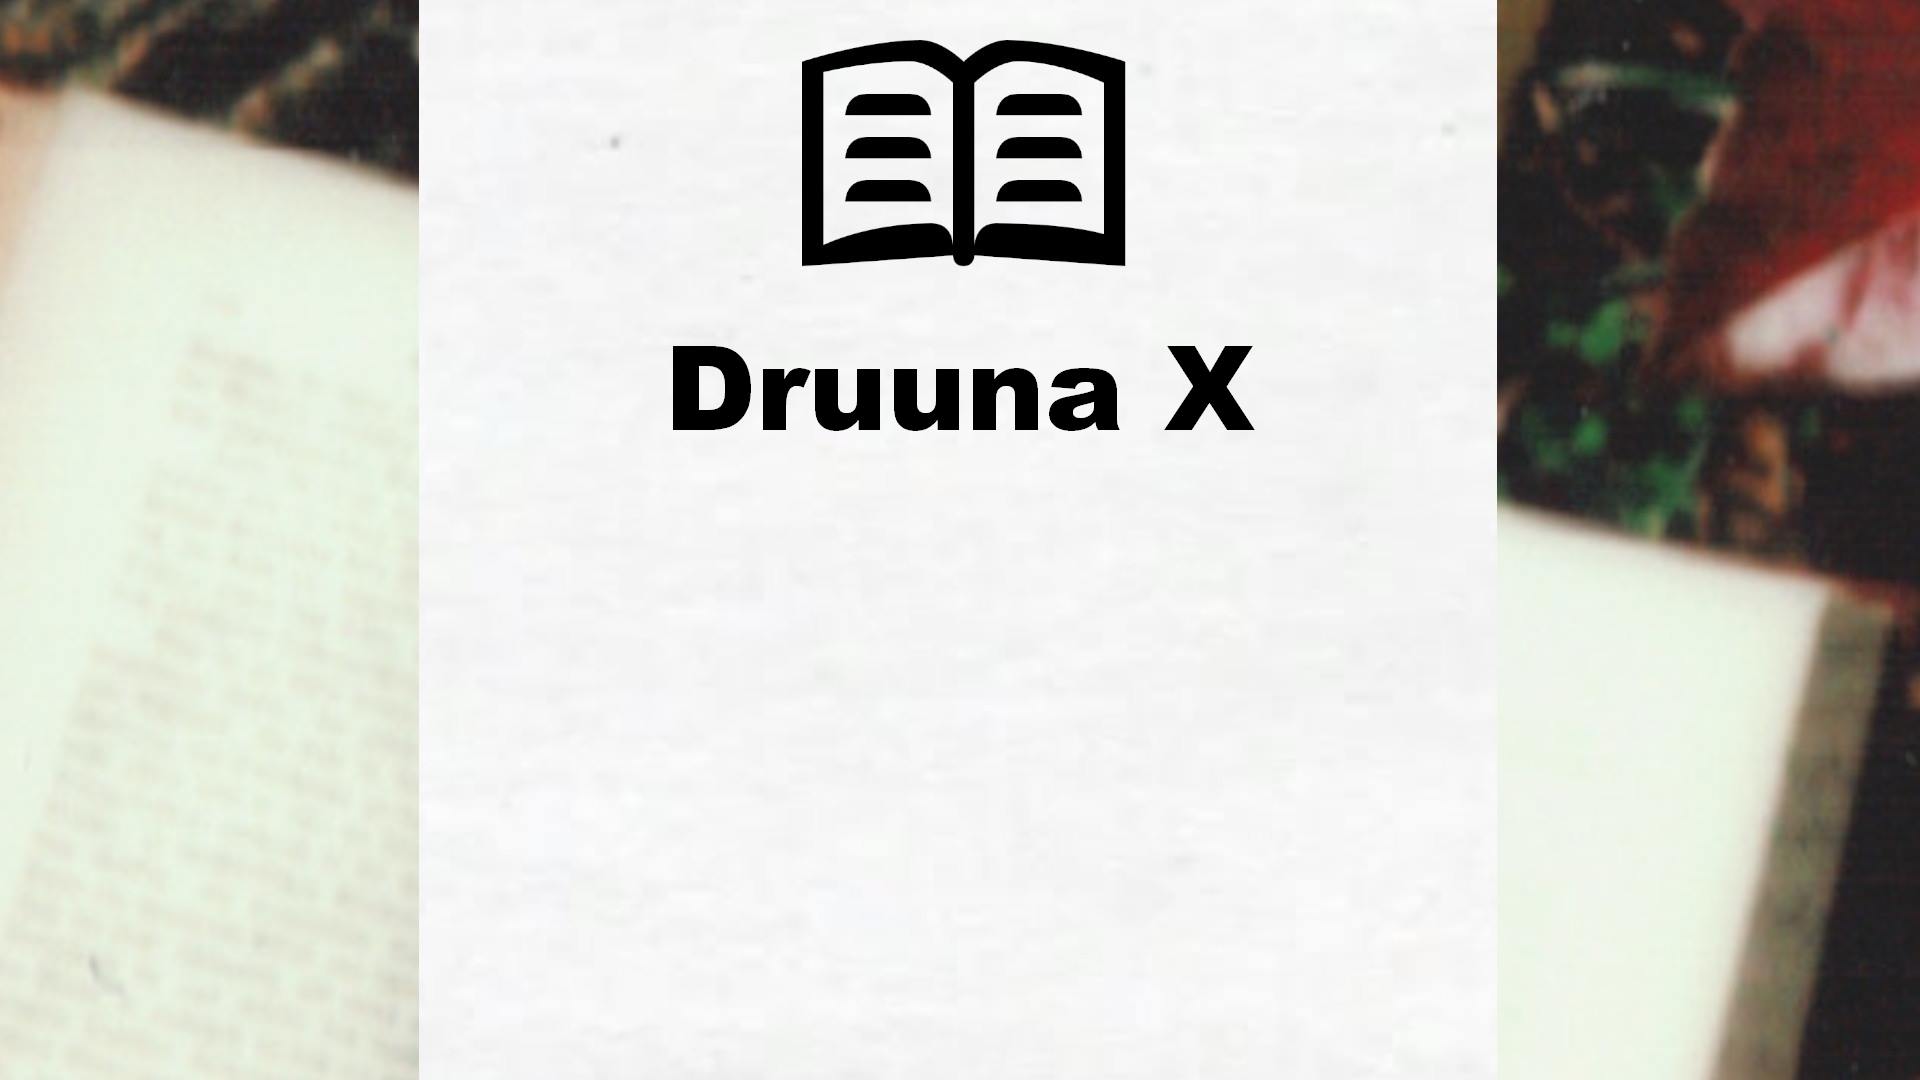 Druuna X, tome 1 – Critique